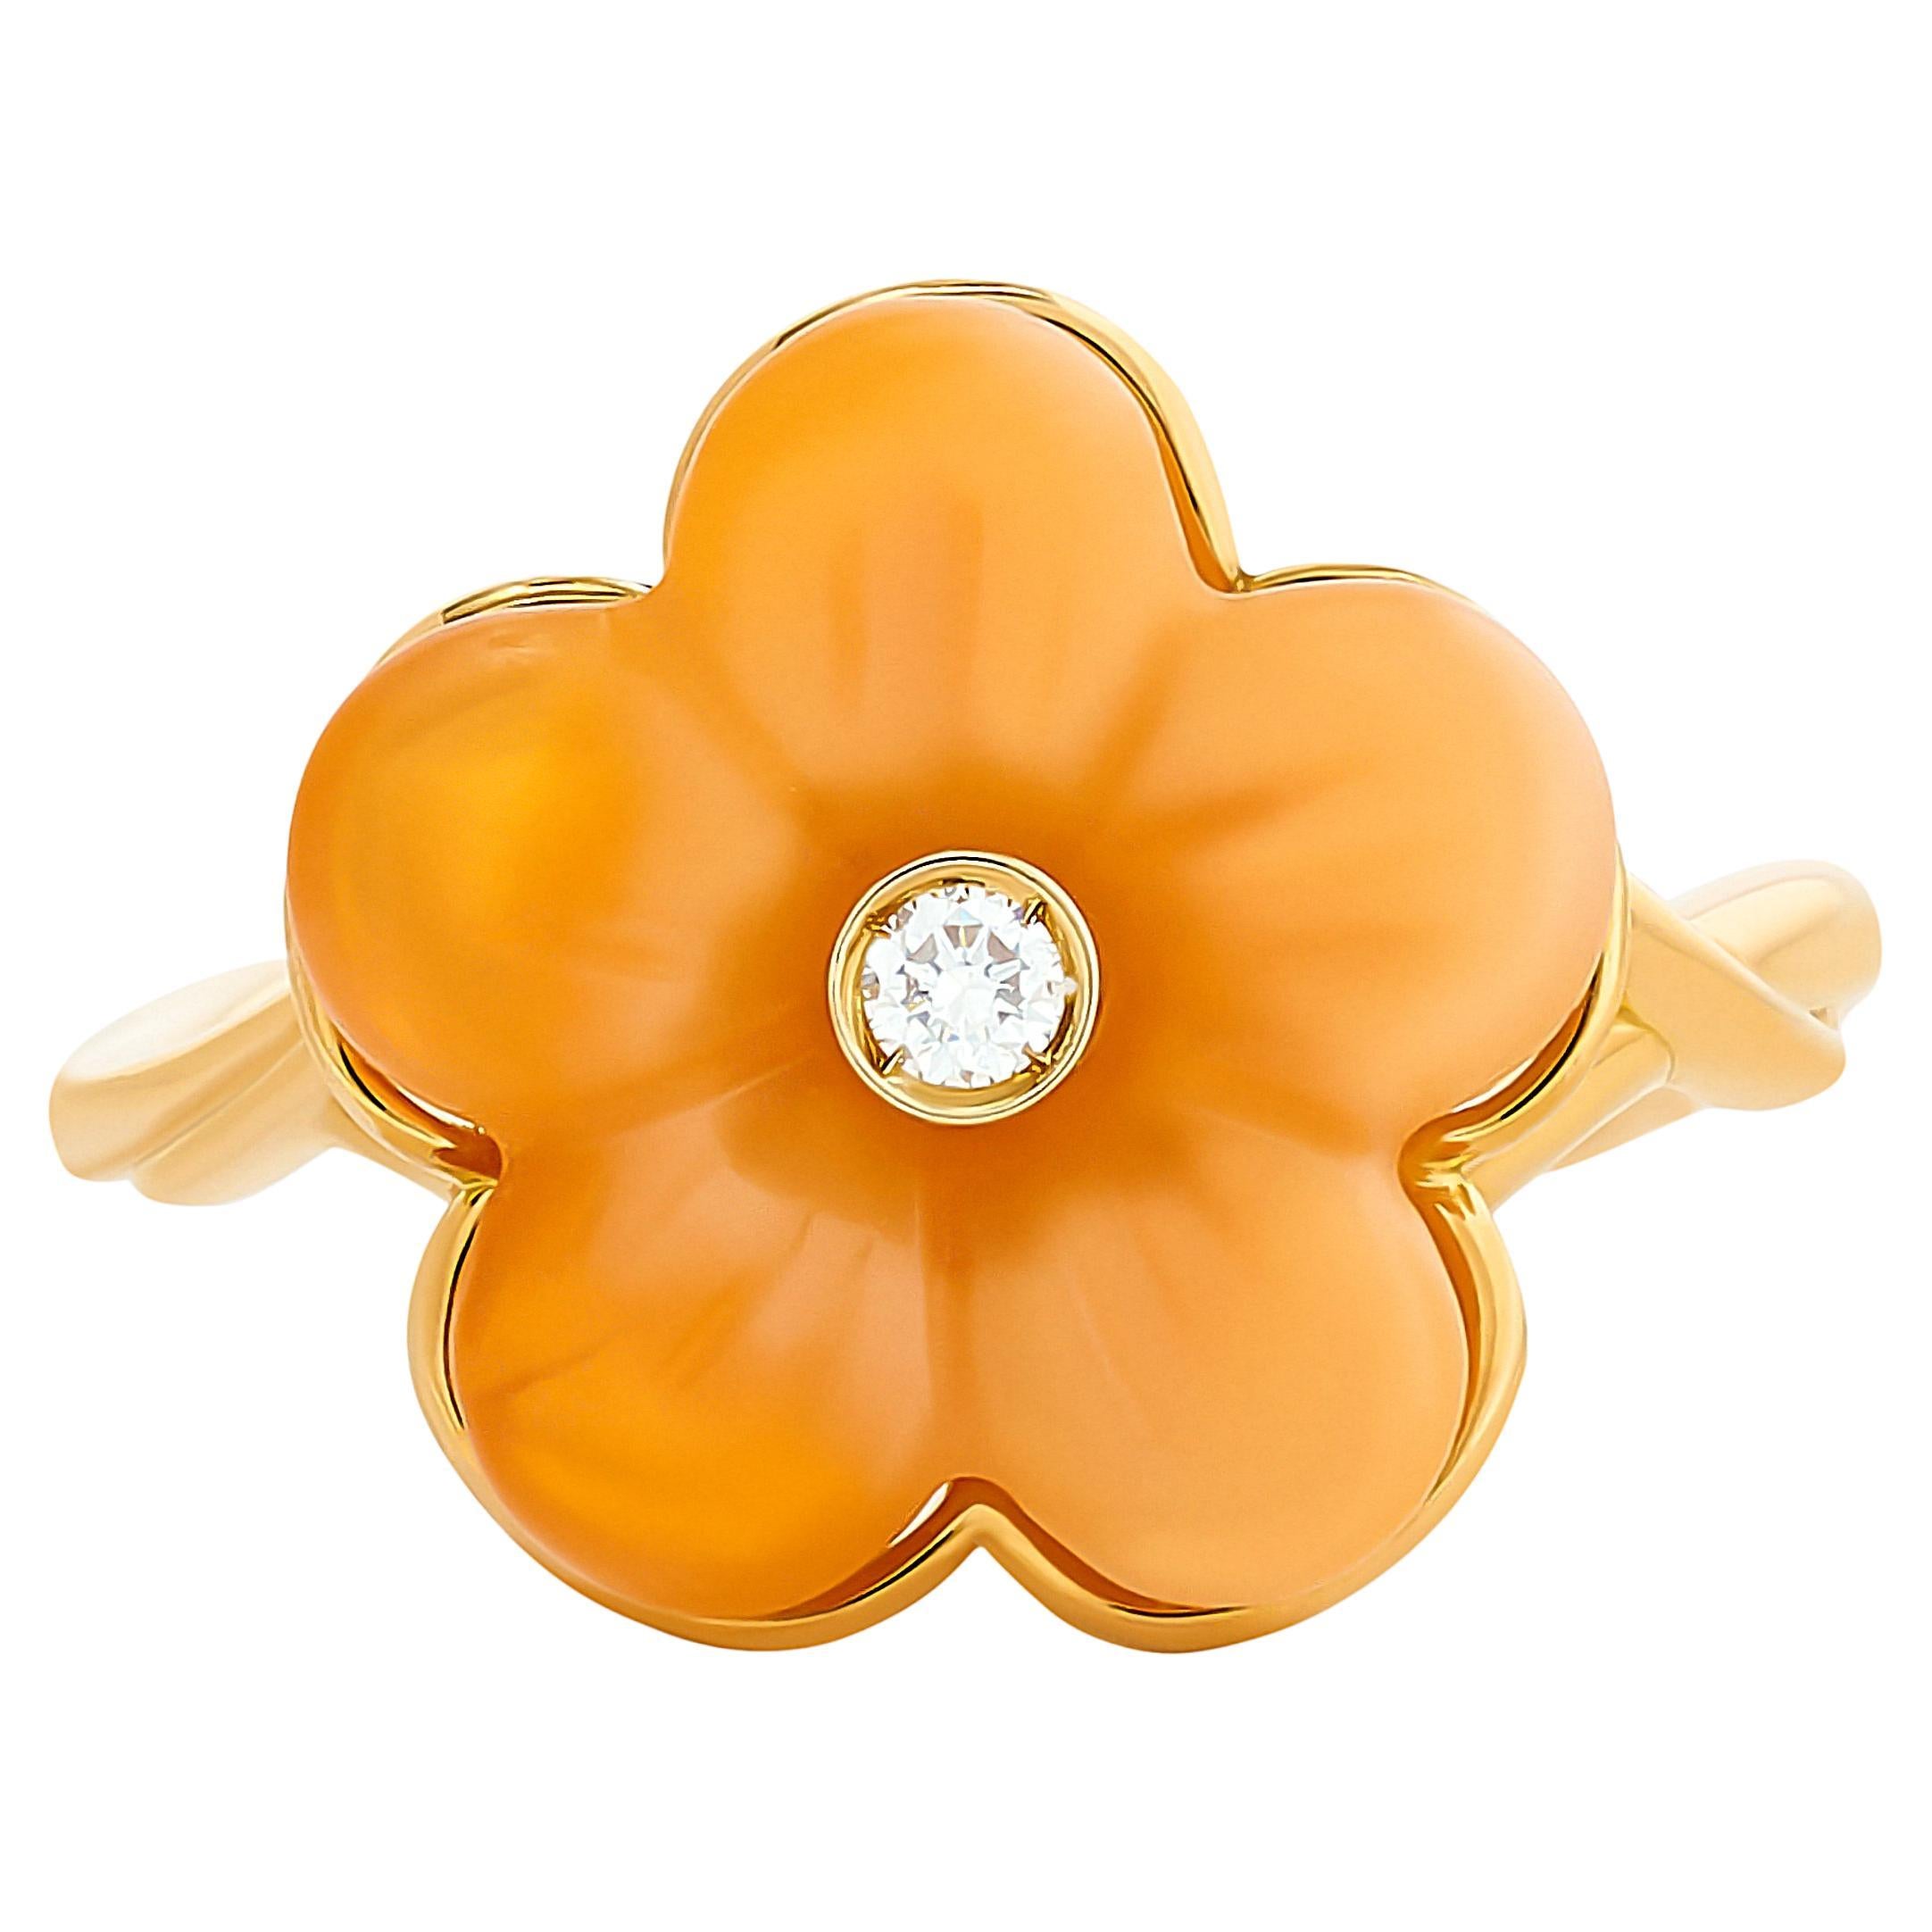 Ferragamo 18 Karat Yellow Fire Opal Flower Diamond Ring Size 6.75